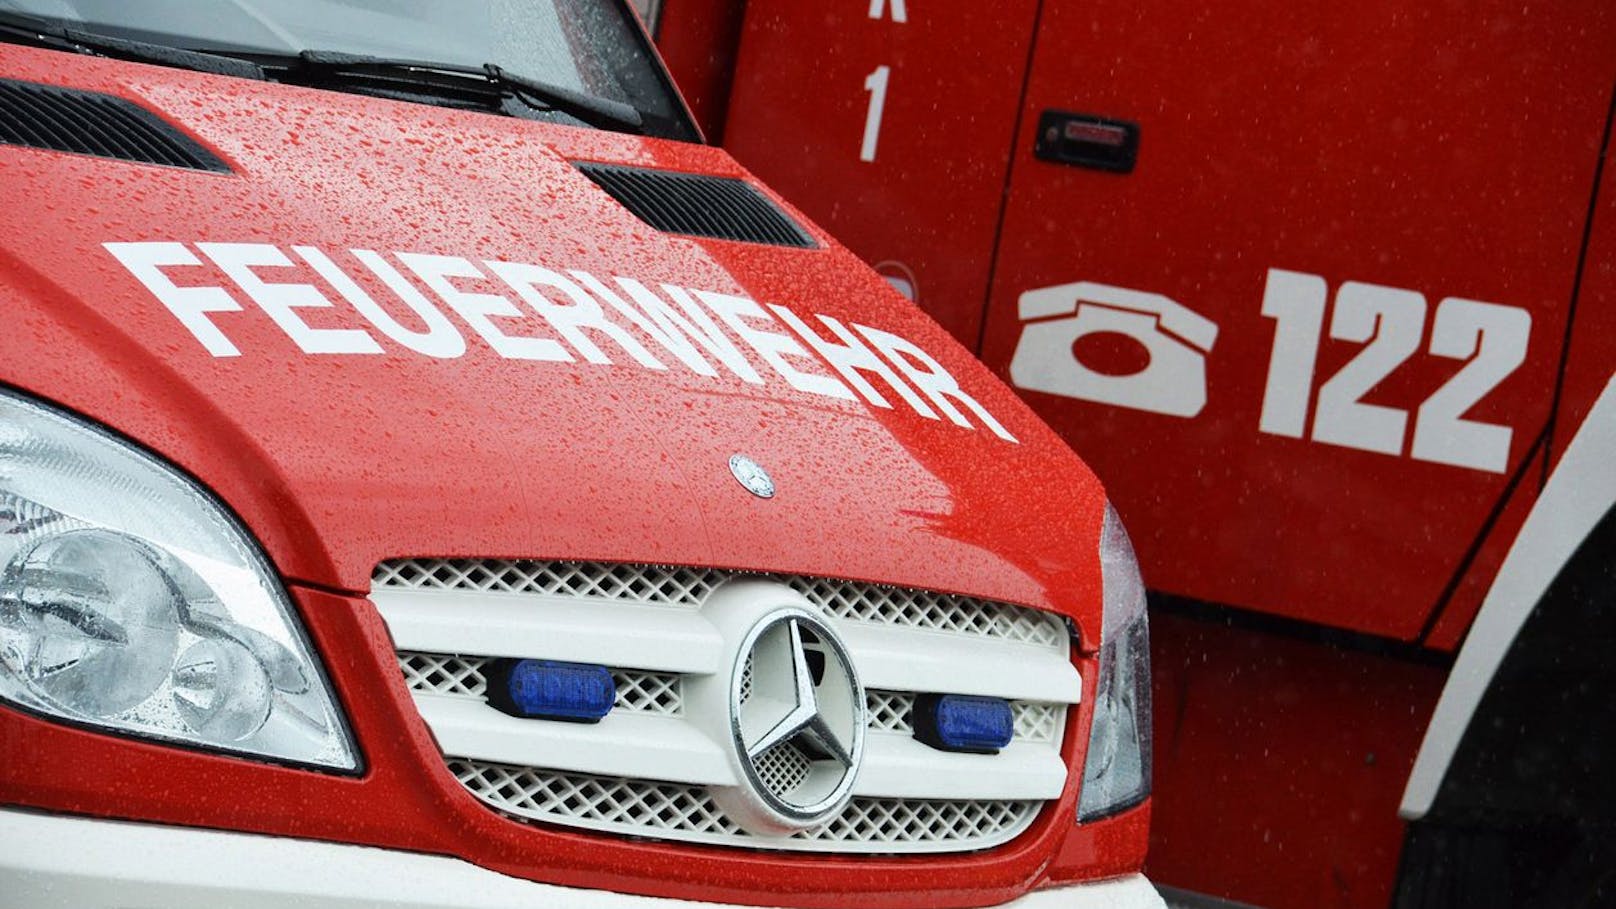 3 Kinder bei Zimmerbrand in Graz verletzt